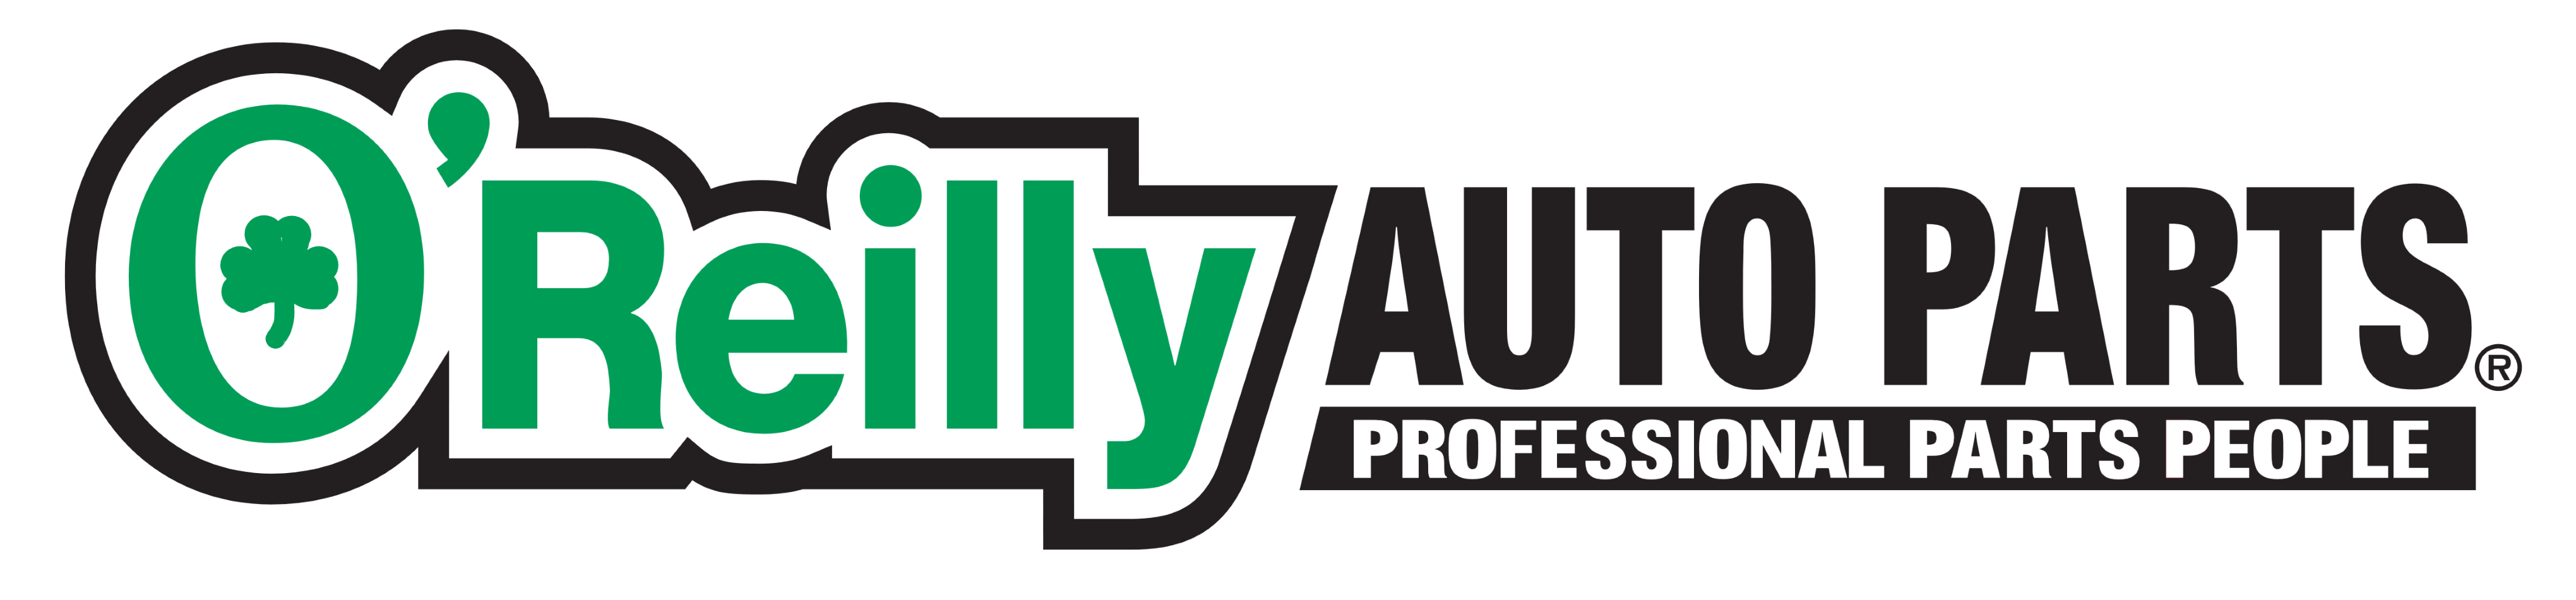 O'Reilly Auto Parts logo, logotype